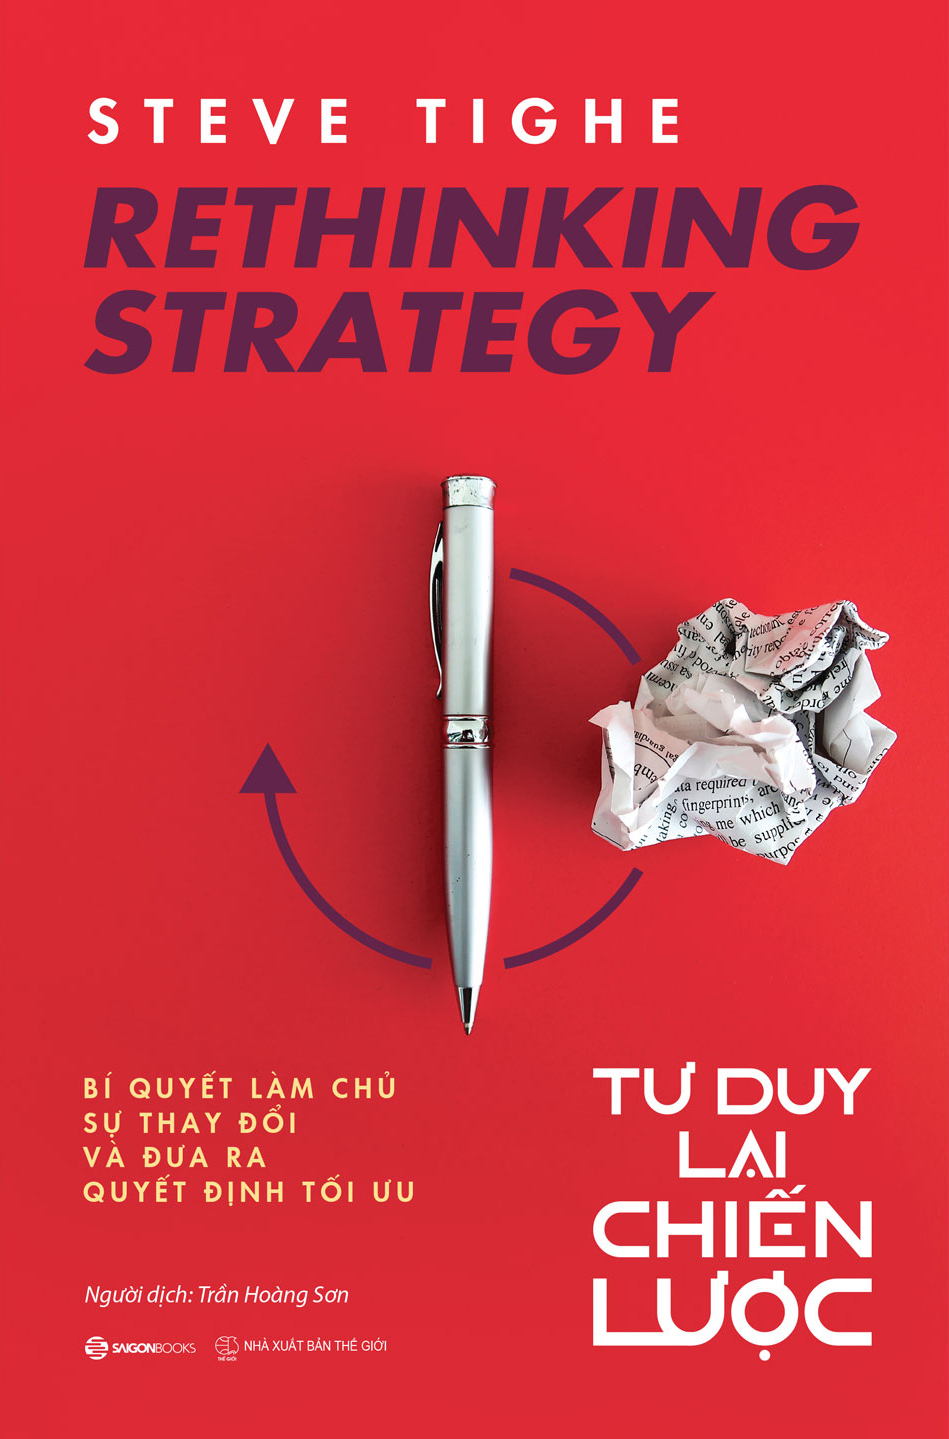 Rethinking Strategy - Tư Duy Lại Chiến Lược PDF